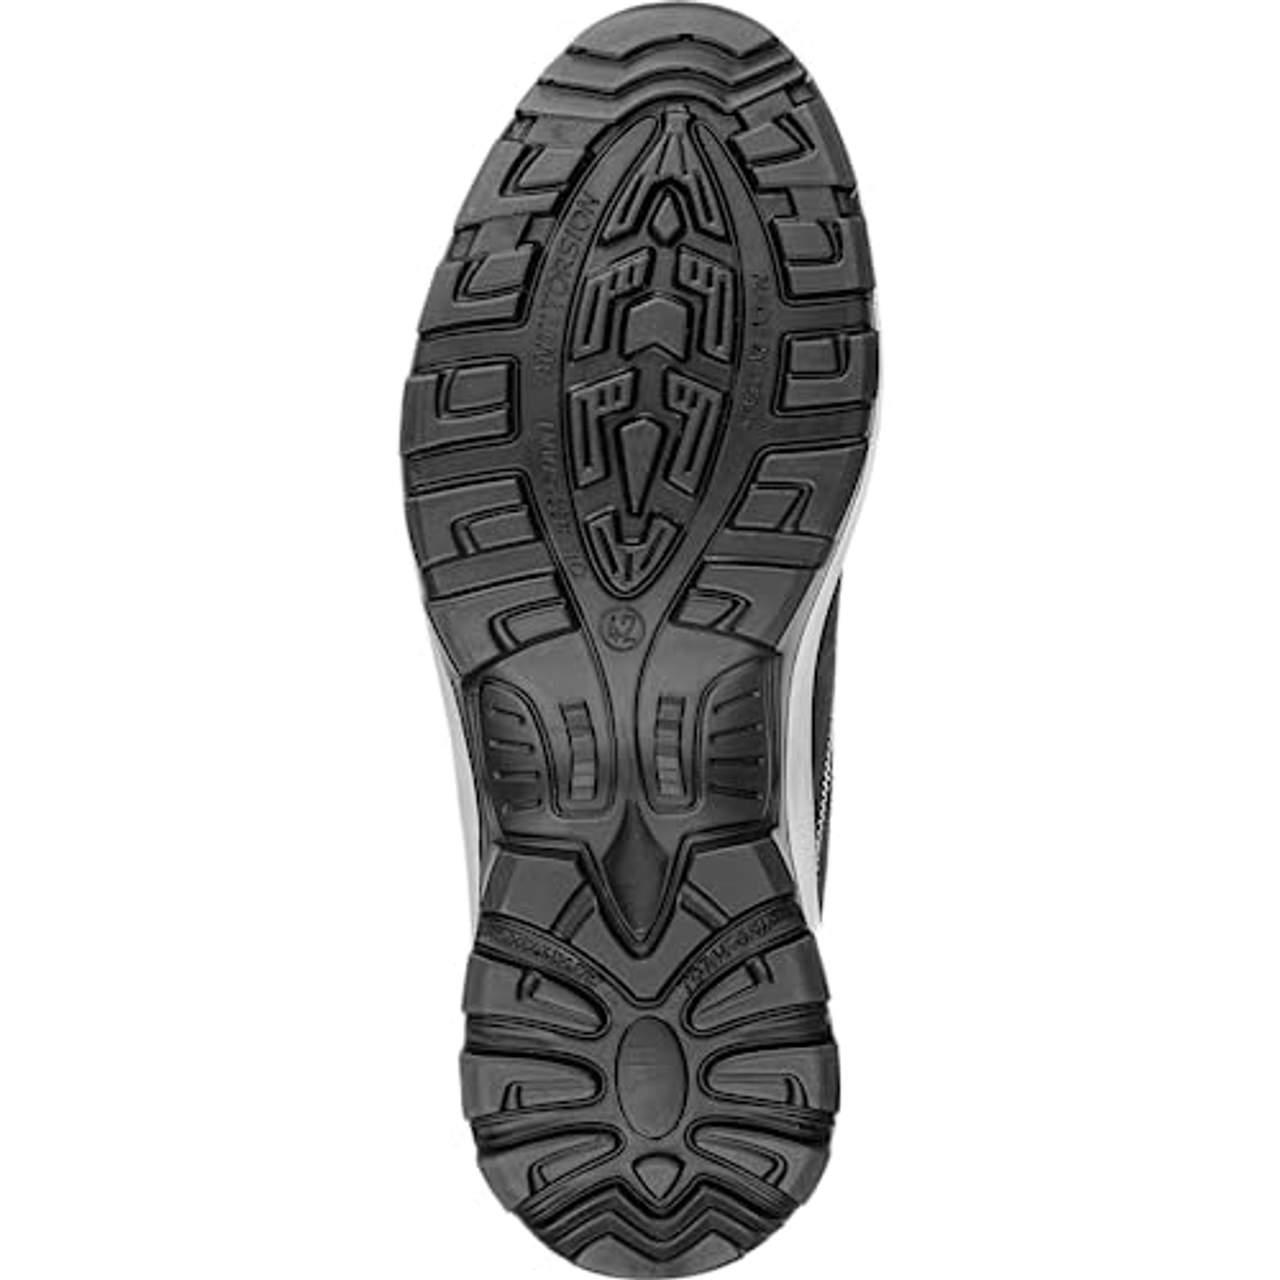 WÜRTH MODYF Sichherheitsstiefel S3 Atlantis grau: Der zertifizierte Schuh